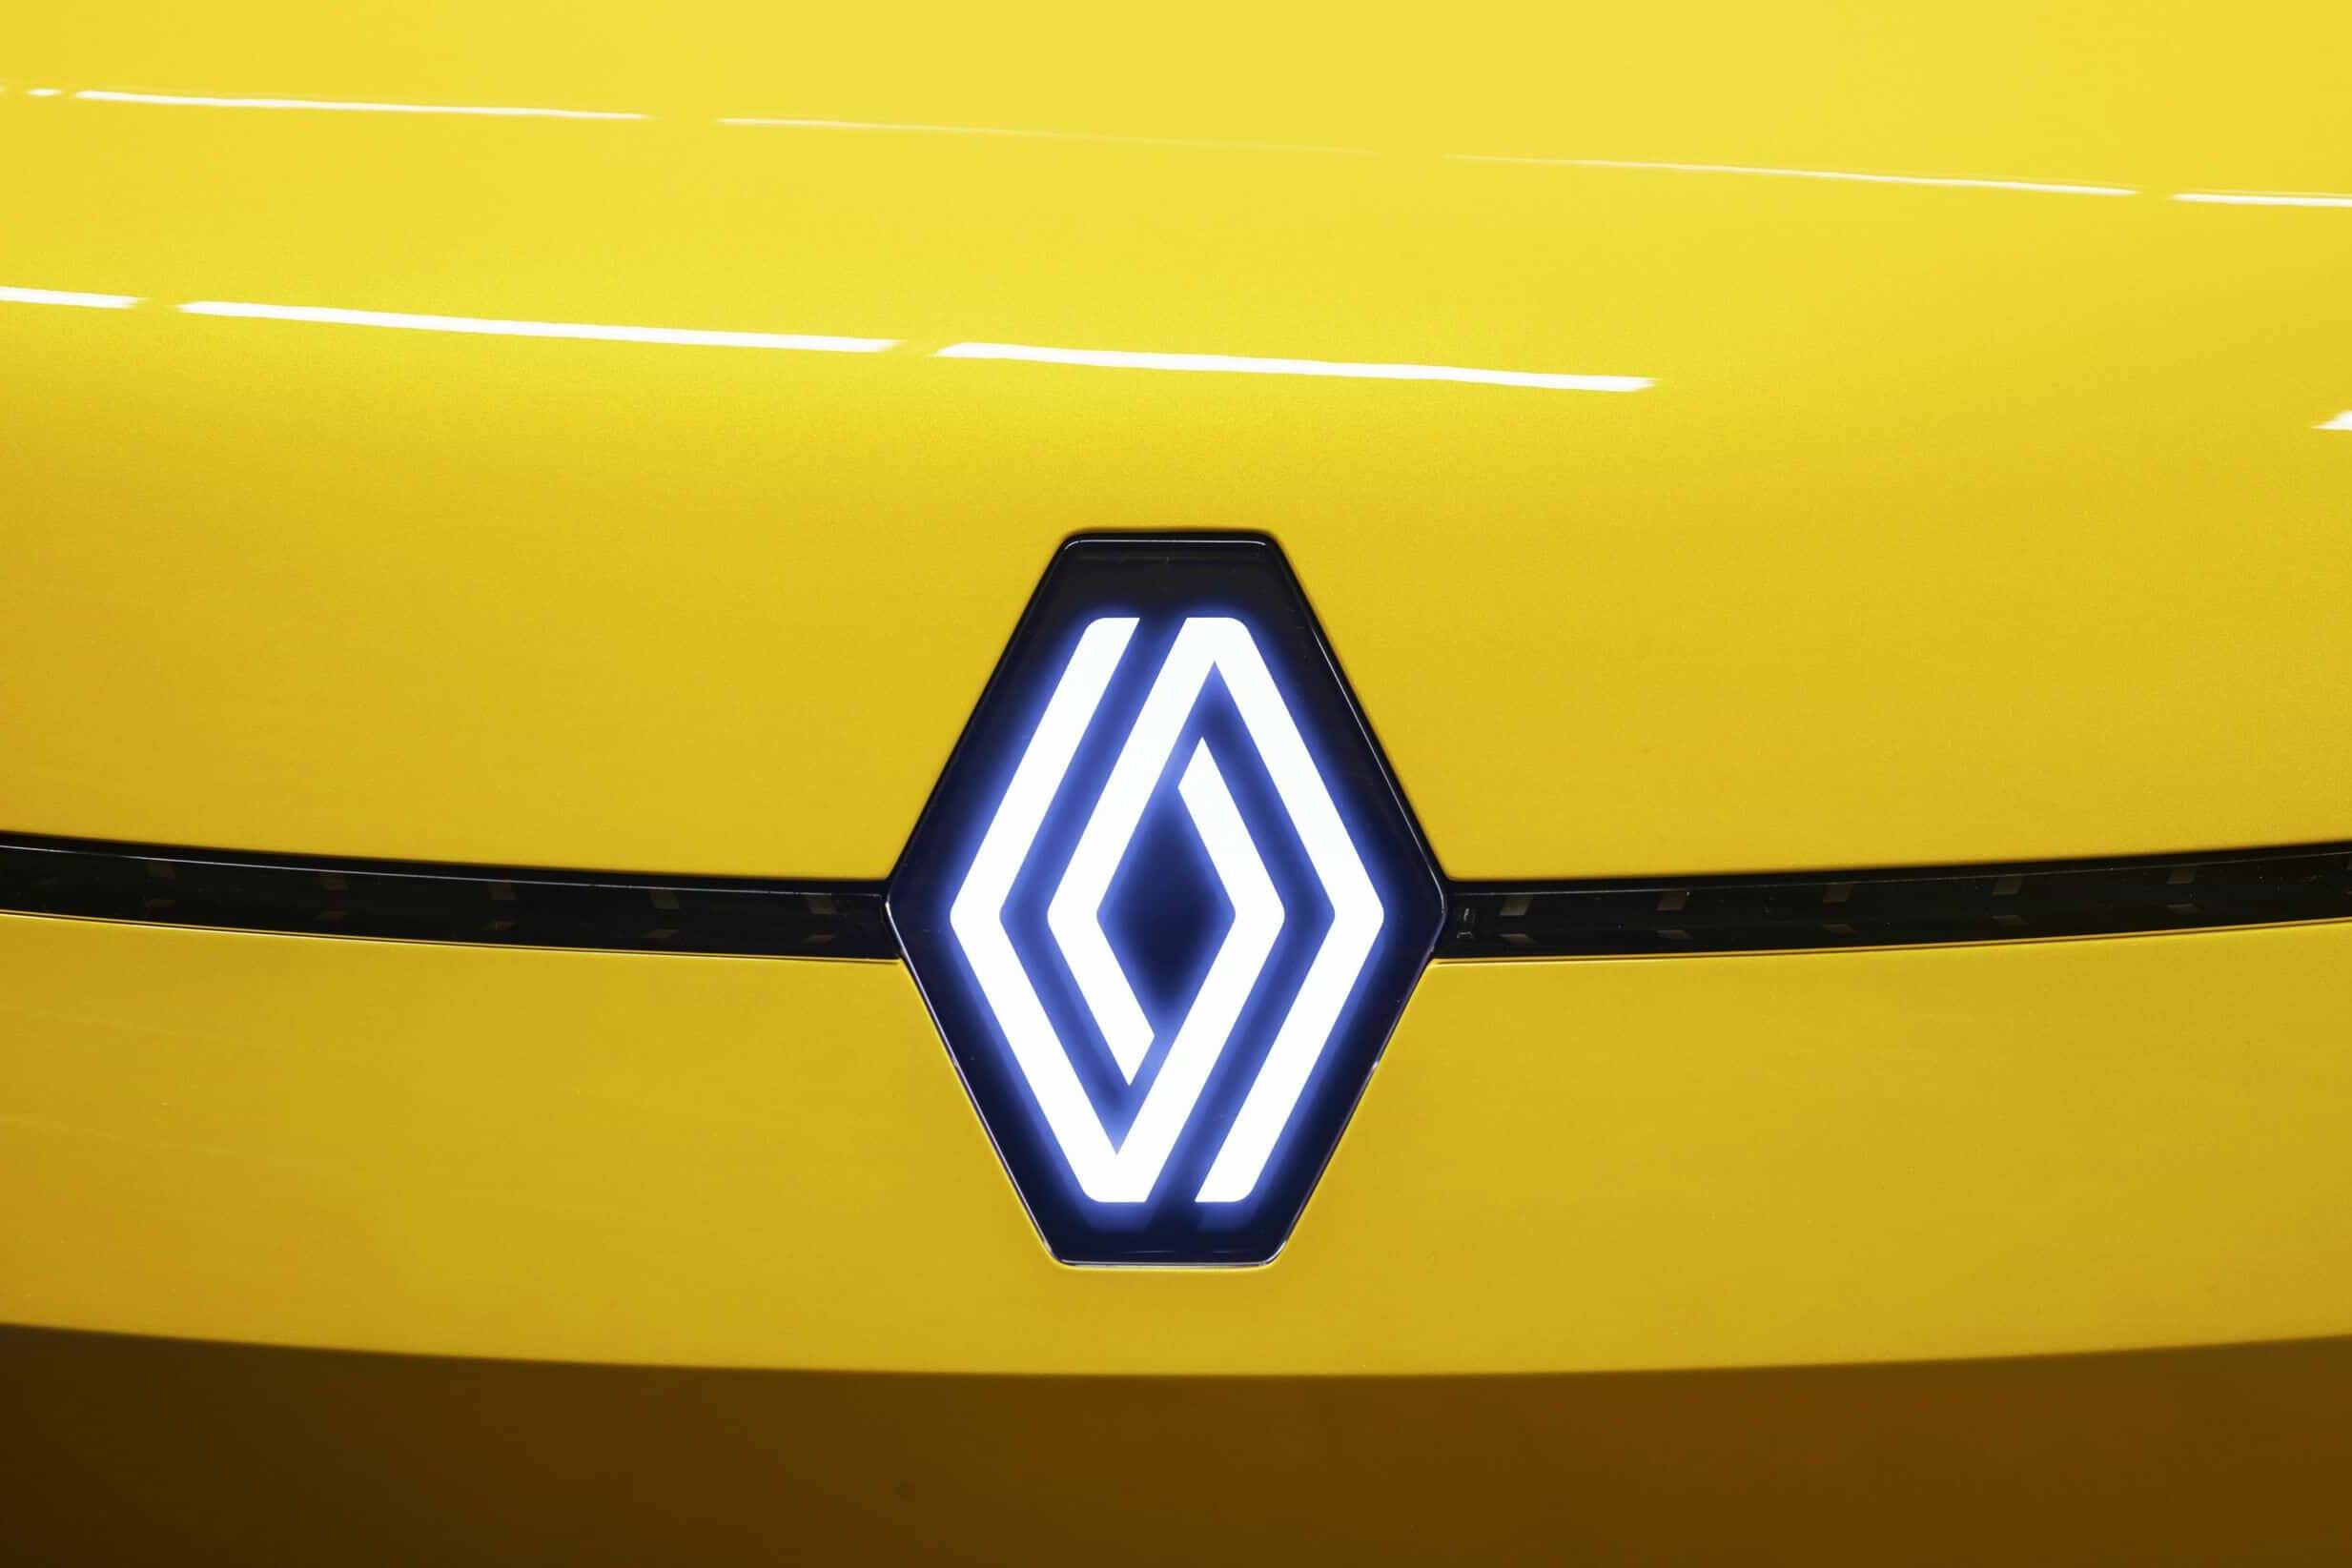 Neues Renault-Logo